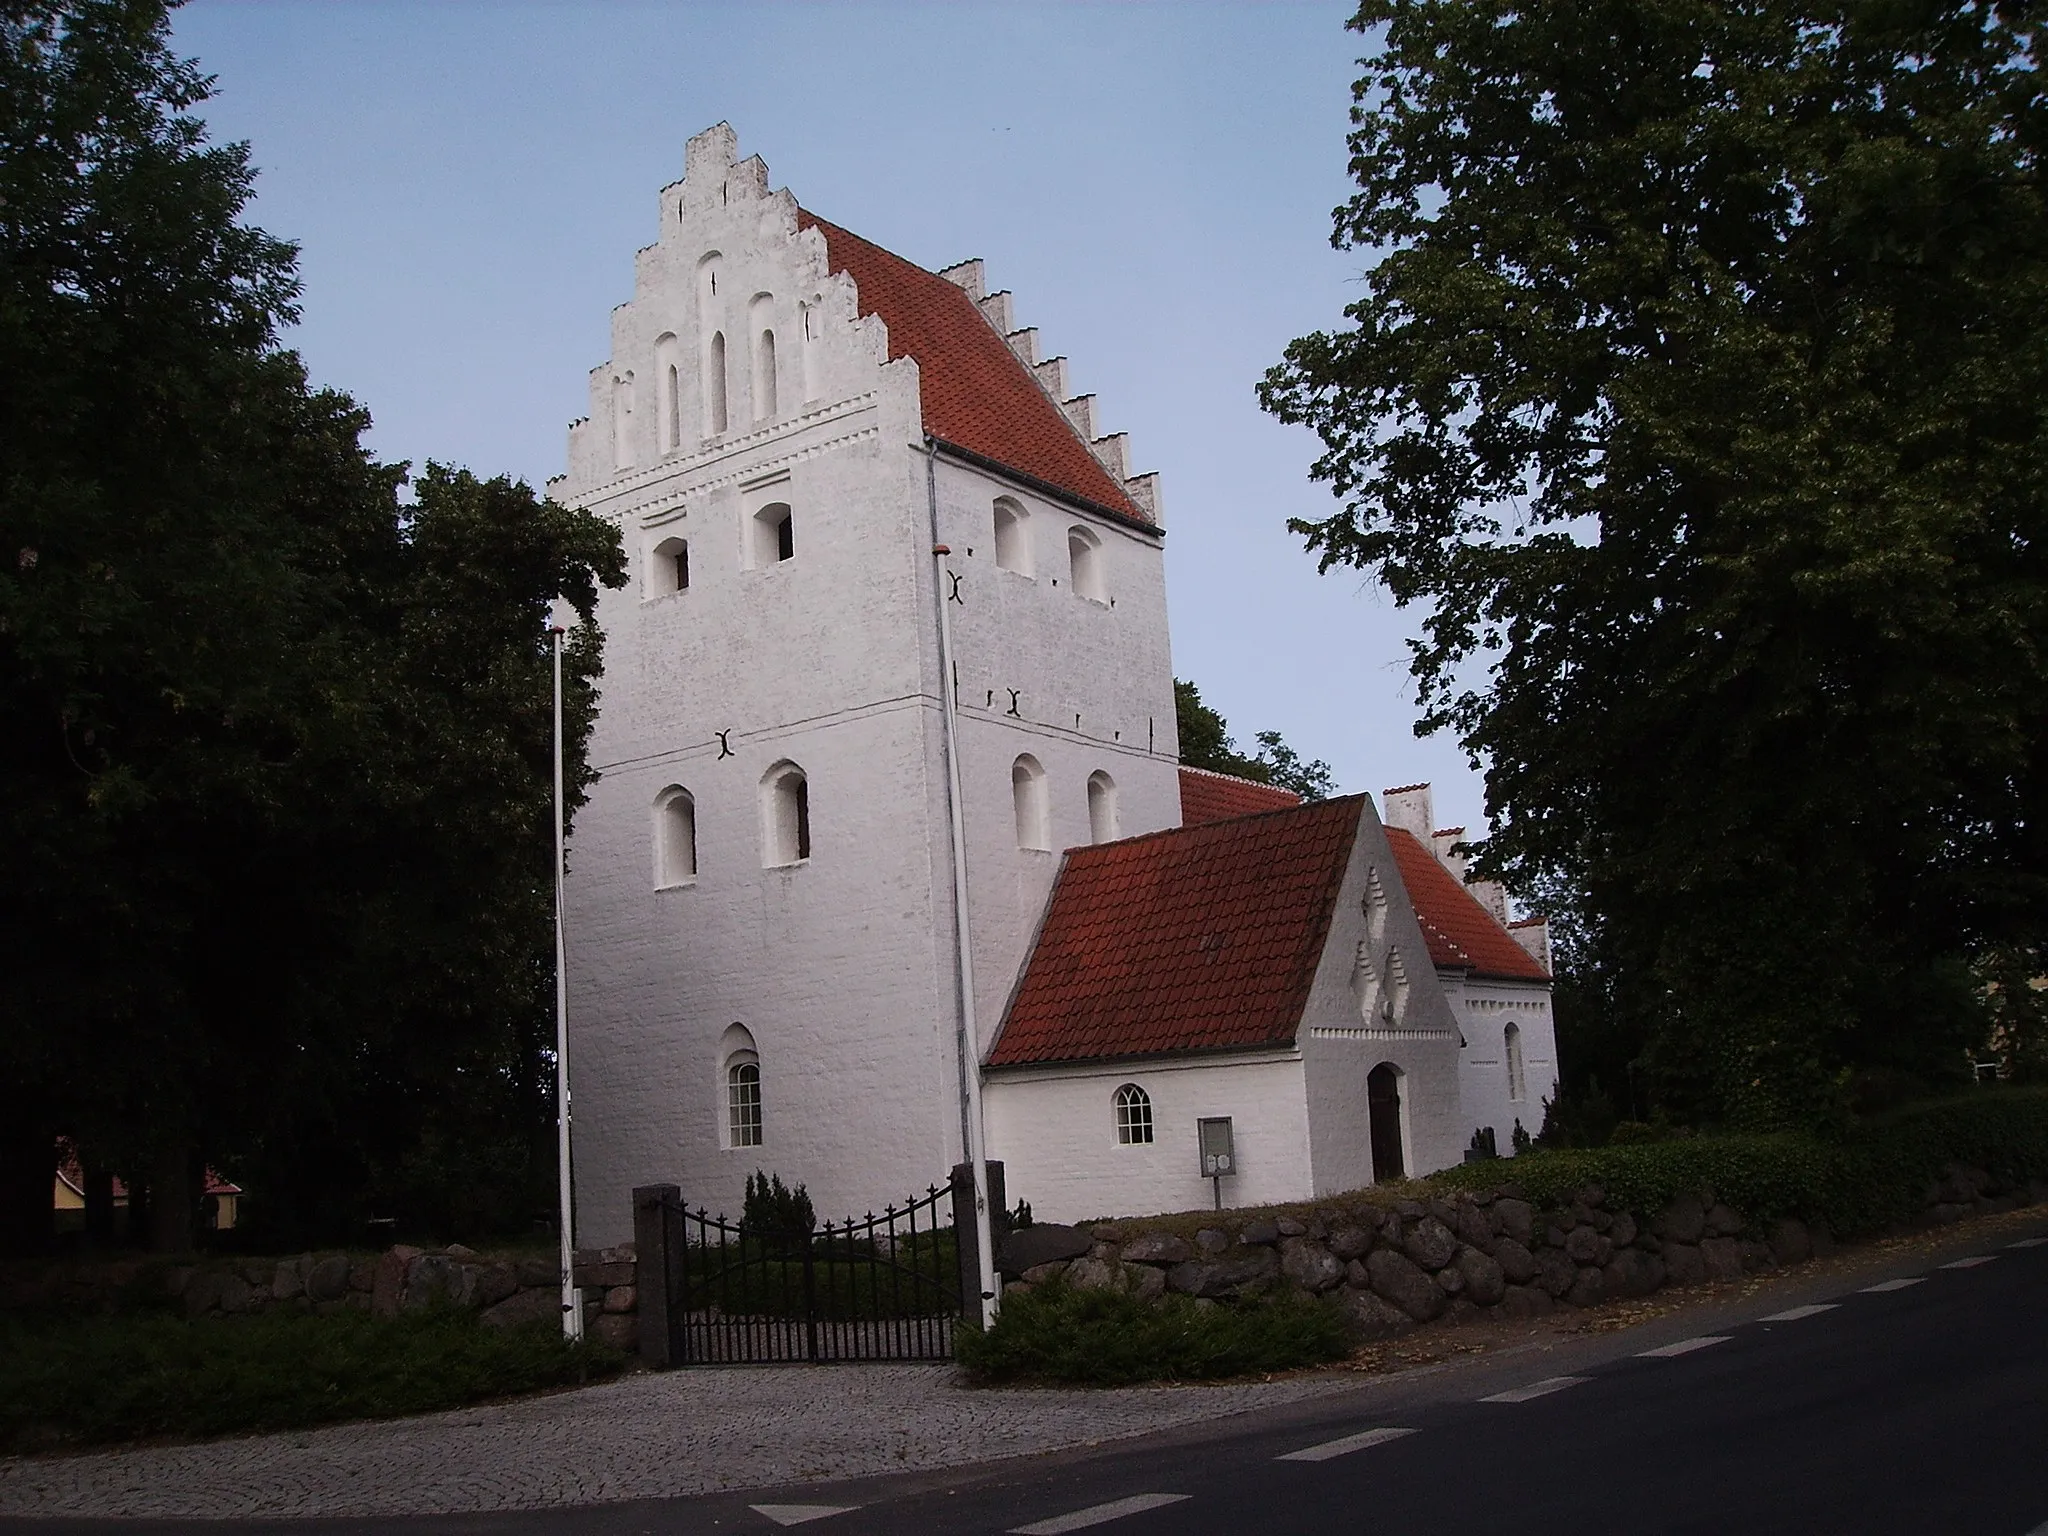 Photo showing: Birkende Kirke, Birkende Sogn, Bjerge Herred, Odense Amt, Denmark
(Danish Church)
Date: 27.07.2006

Photographed by Søren Møller